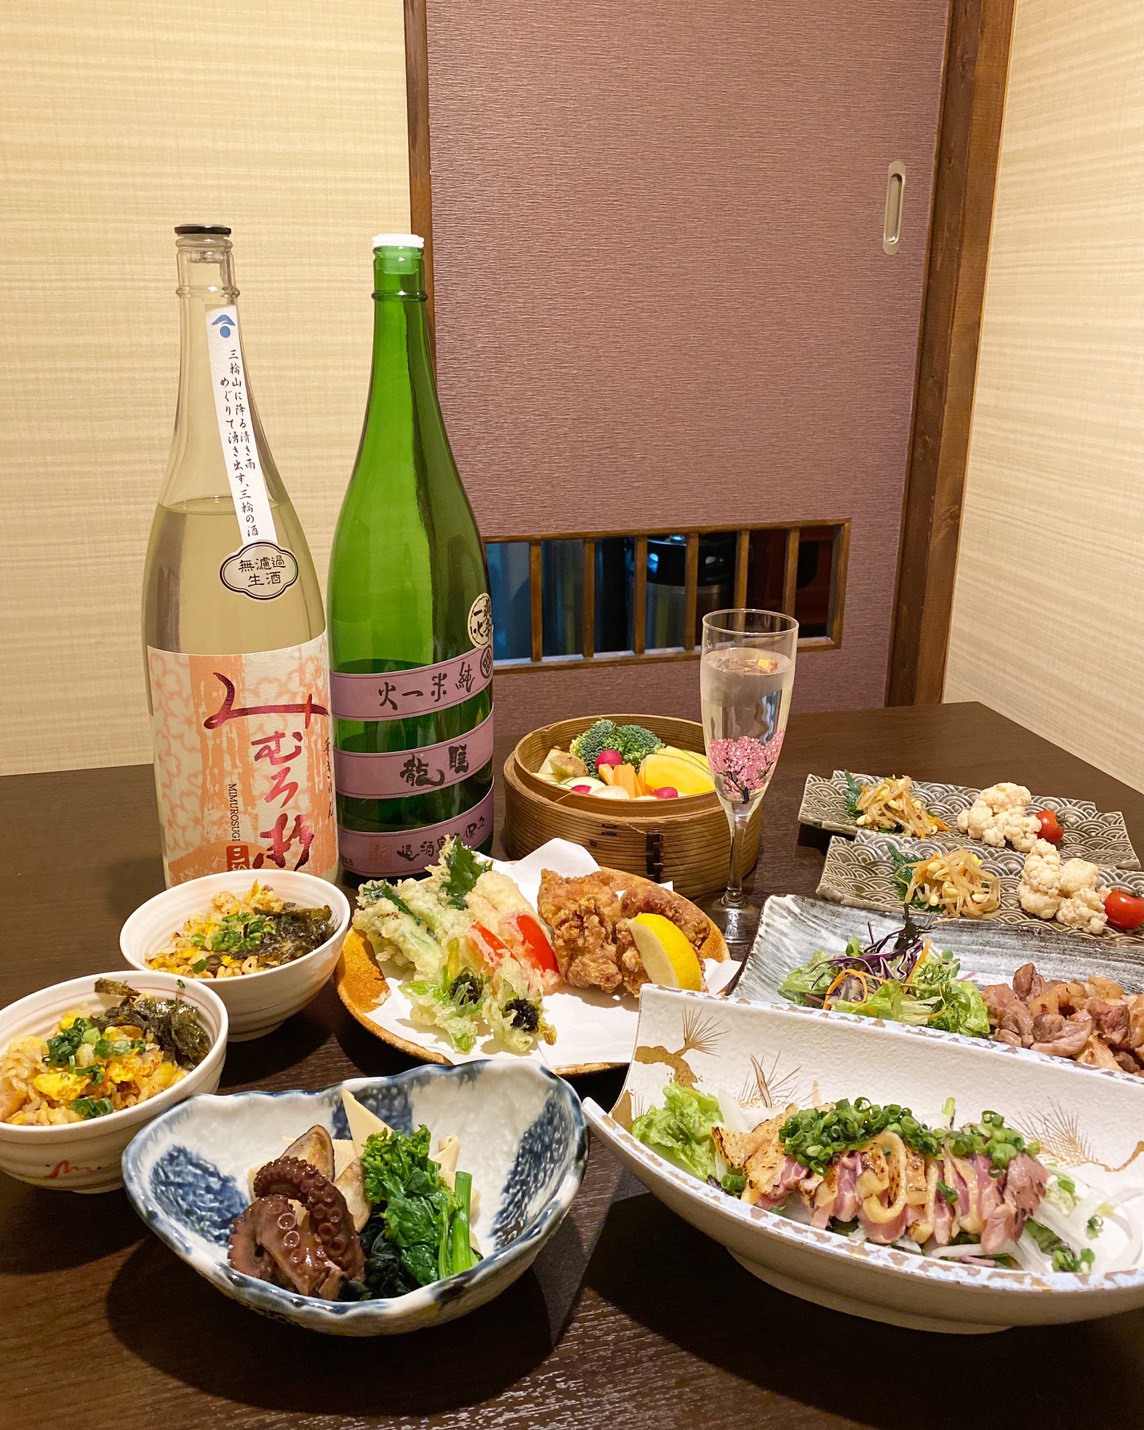 しゅん坊やすらぎコース 奈良の地鶏や、地酒、旬の野菜にこだわった豪華夕食コース